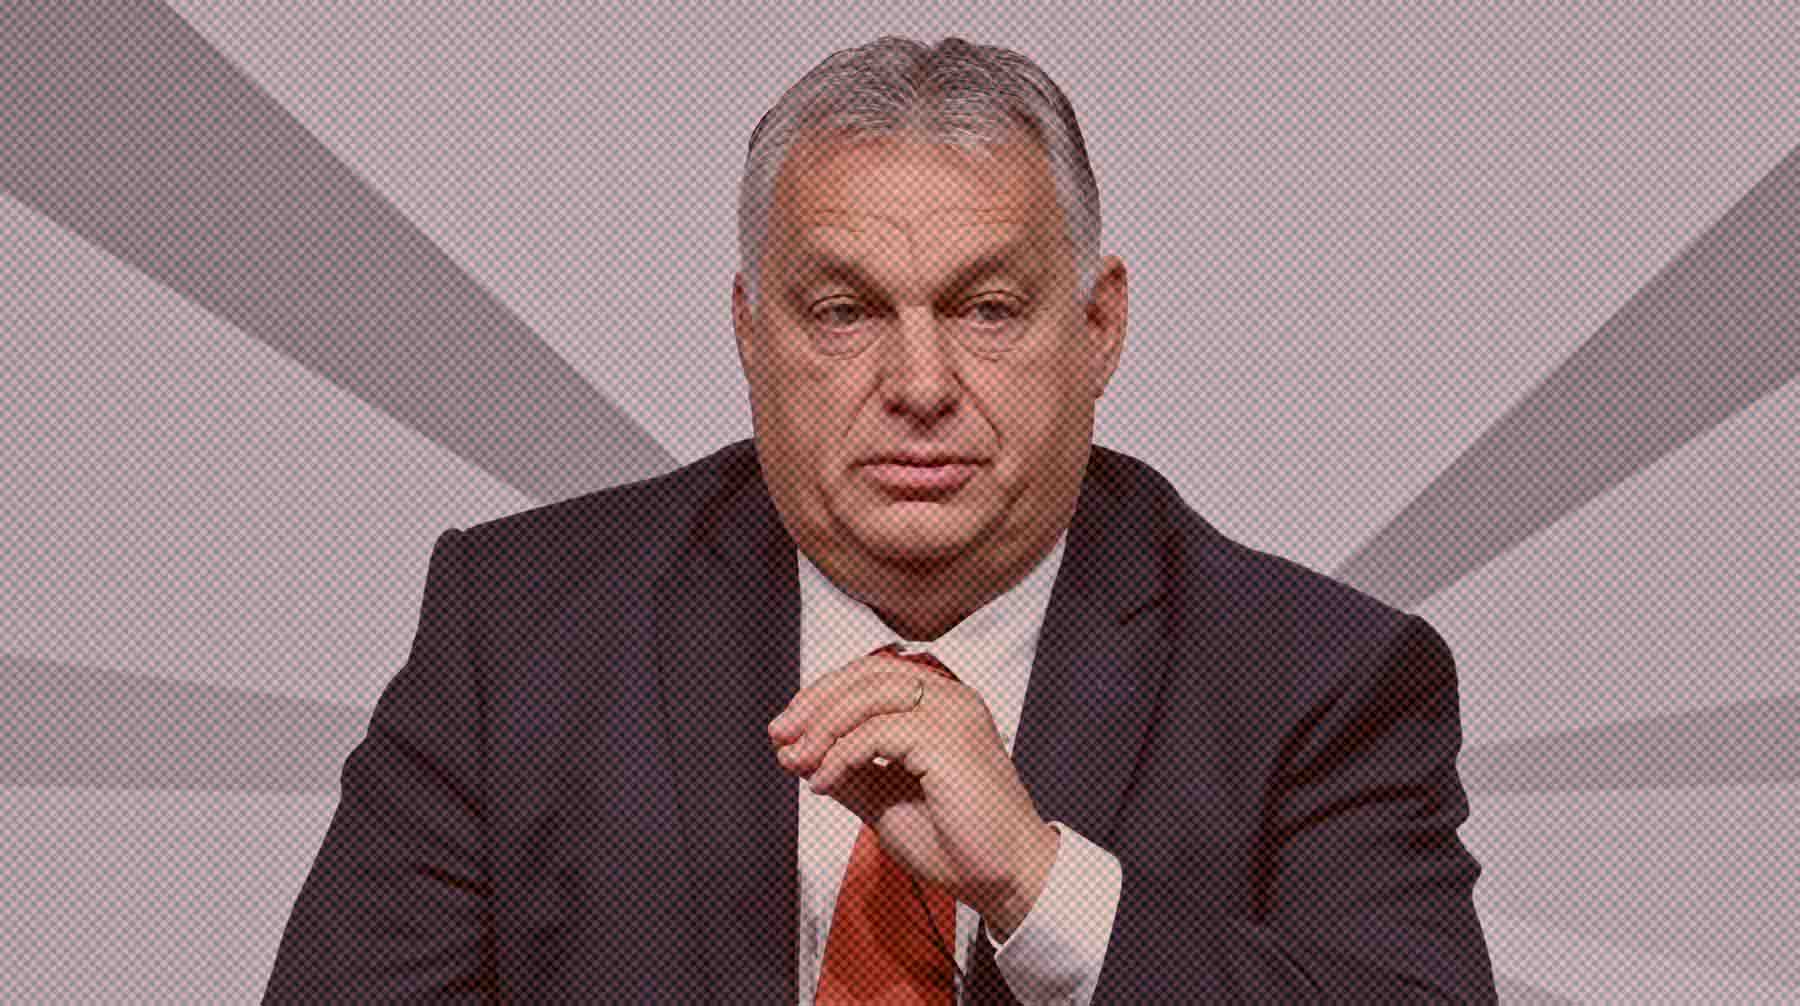 Политик назвал эту возможную меру «ранее не переступаемой границей» Виктор Орбан